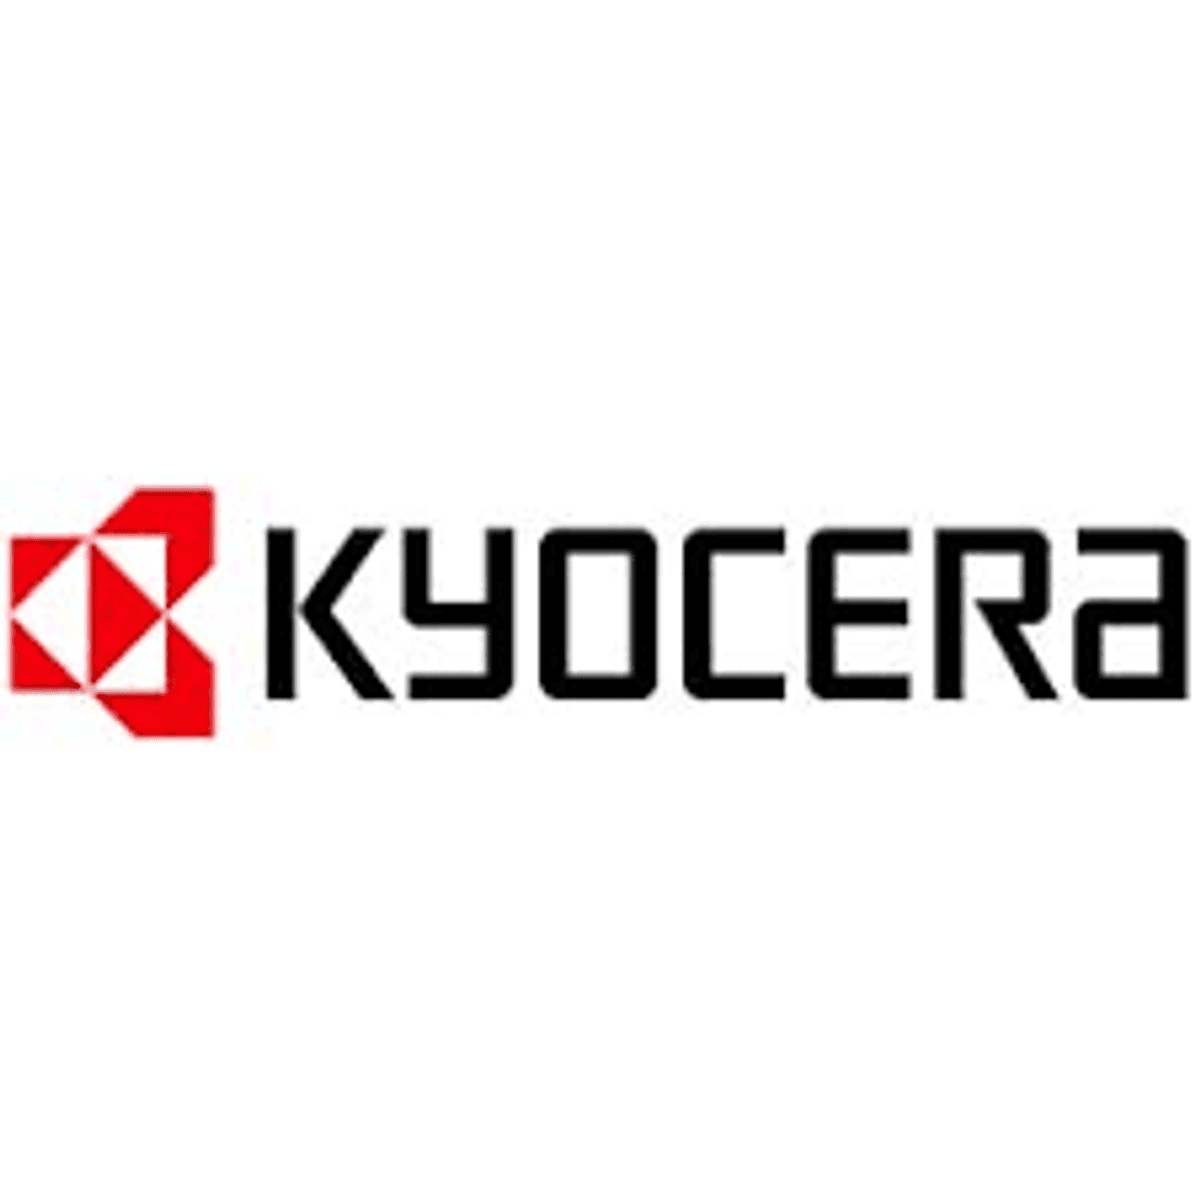 Kyocera bestaat zestig jaar image